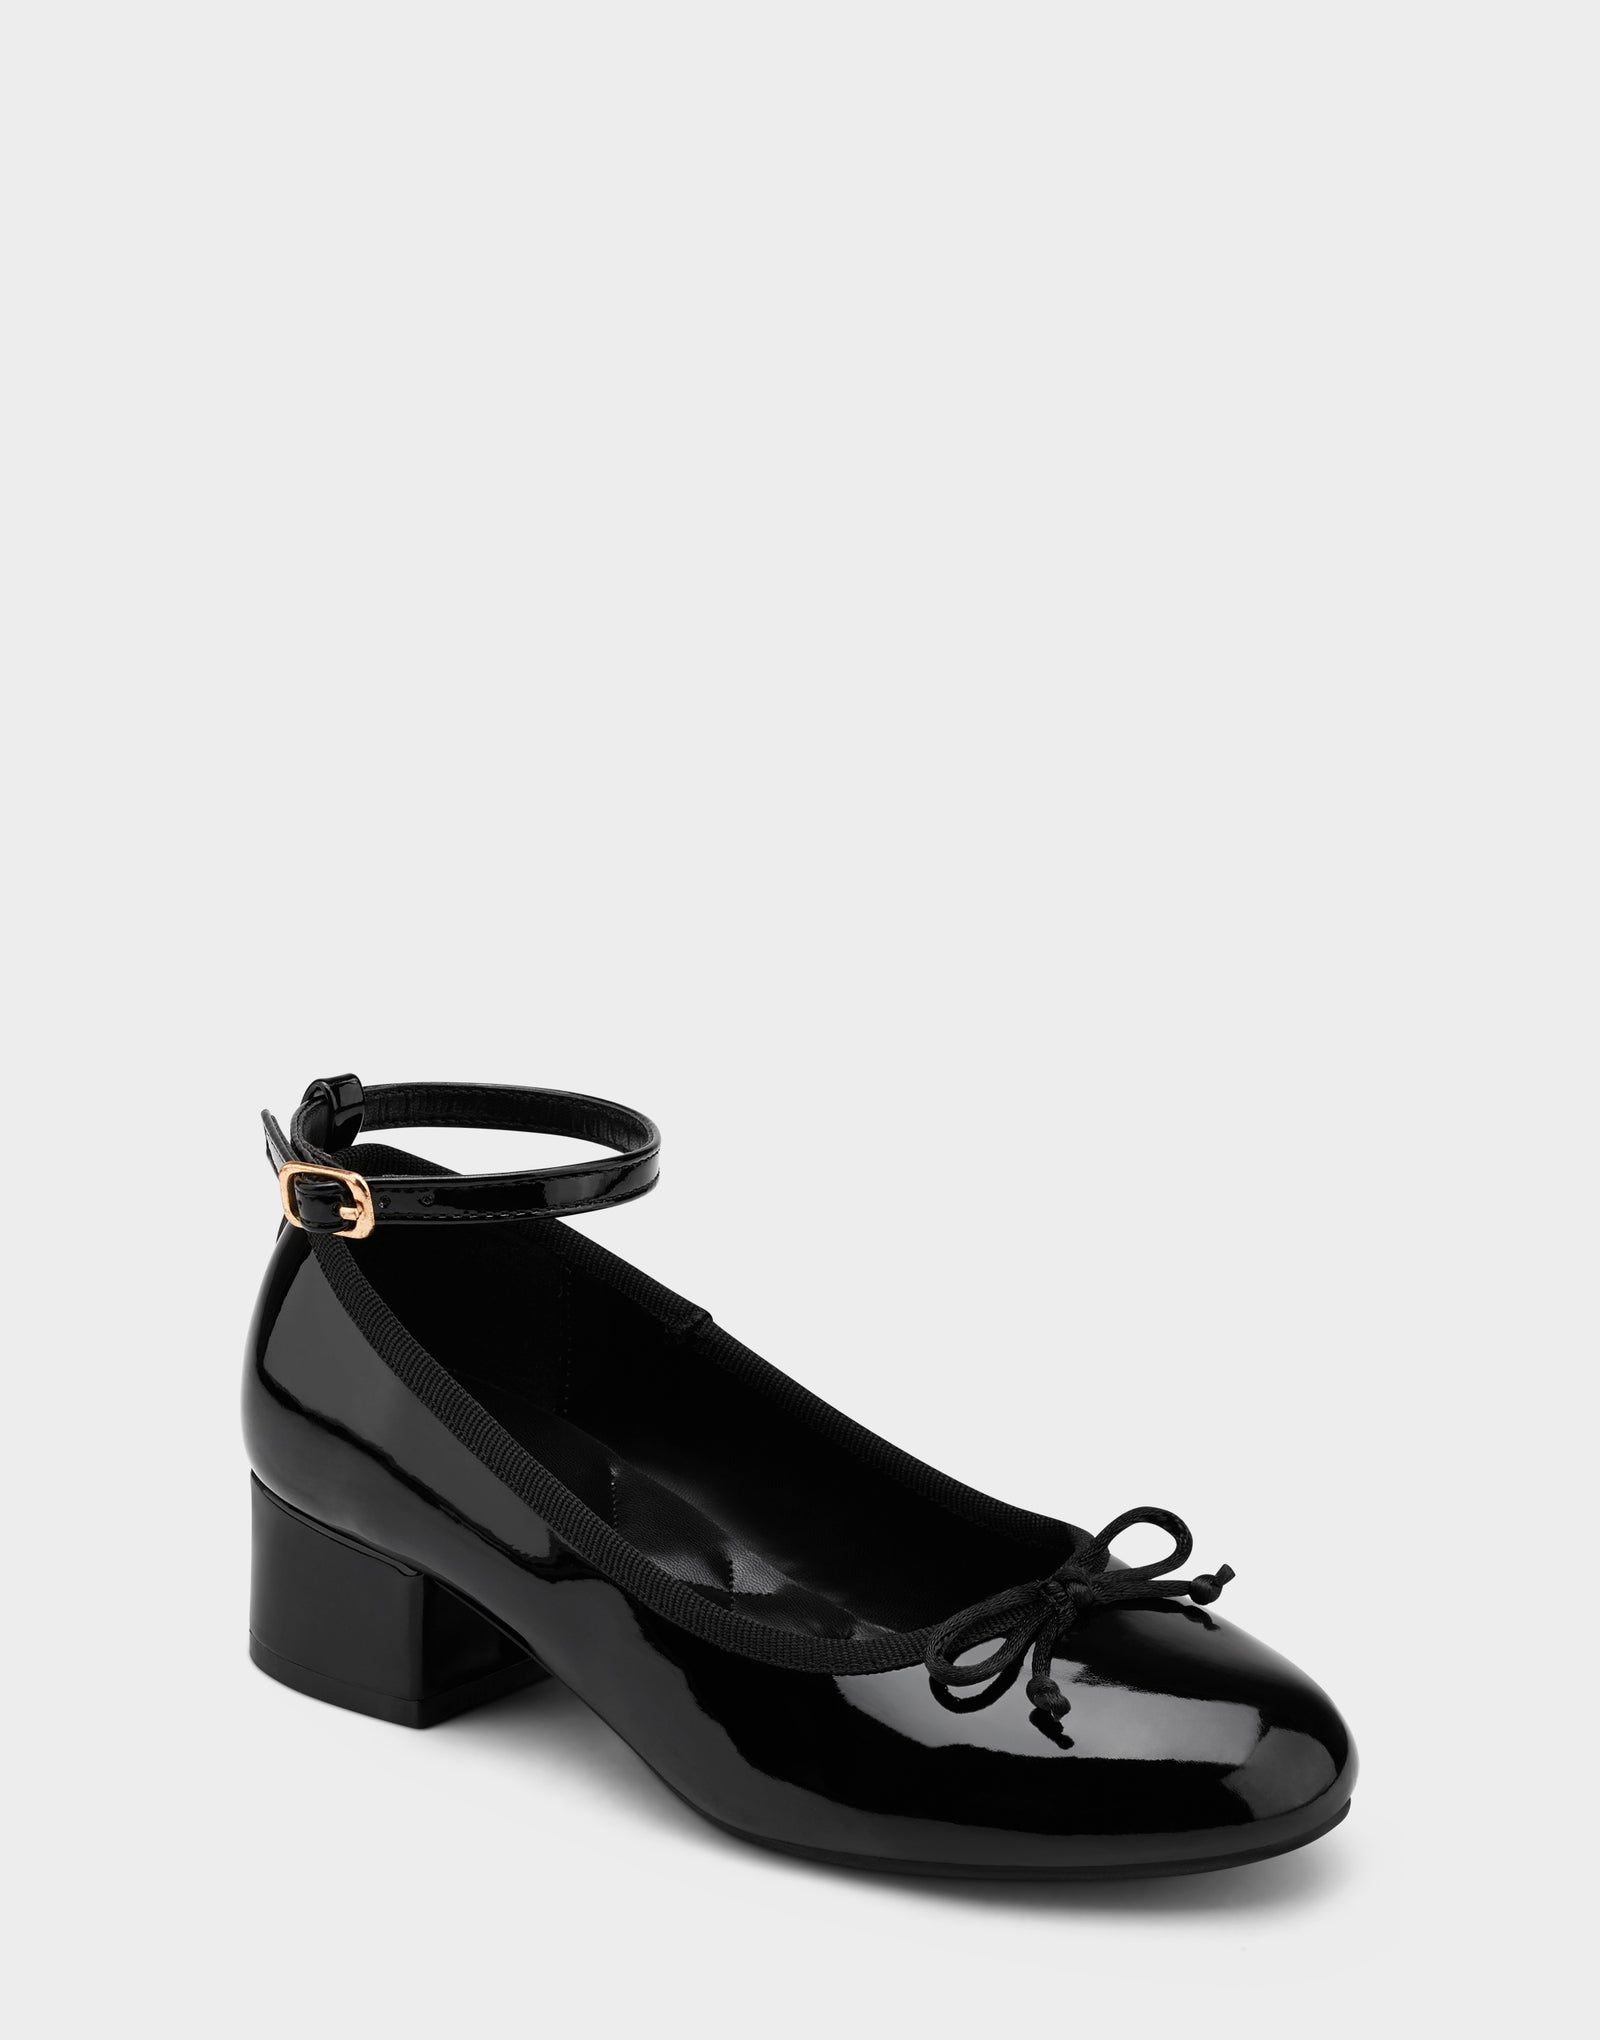 Girls Shoe in Black